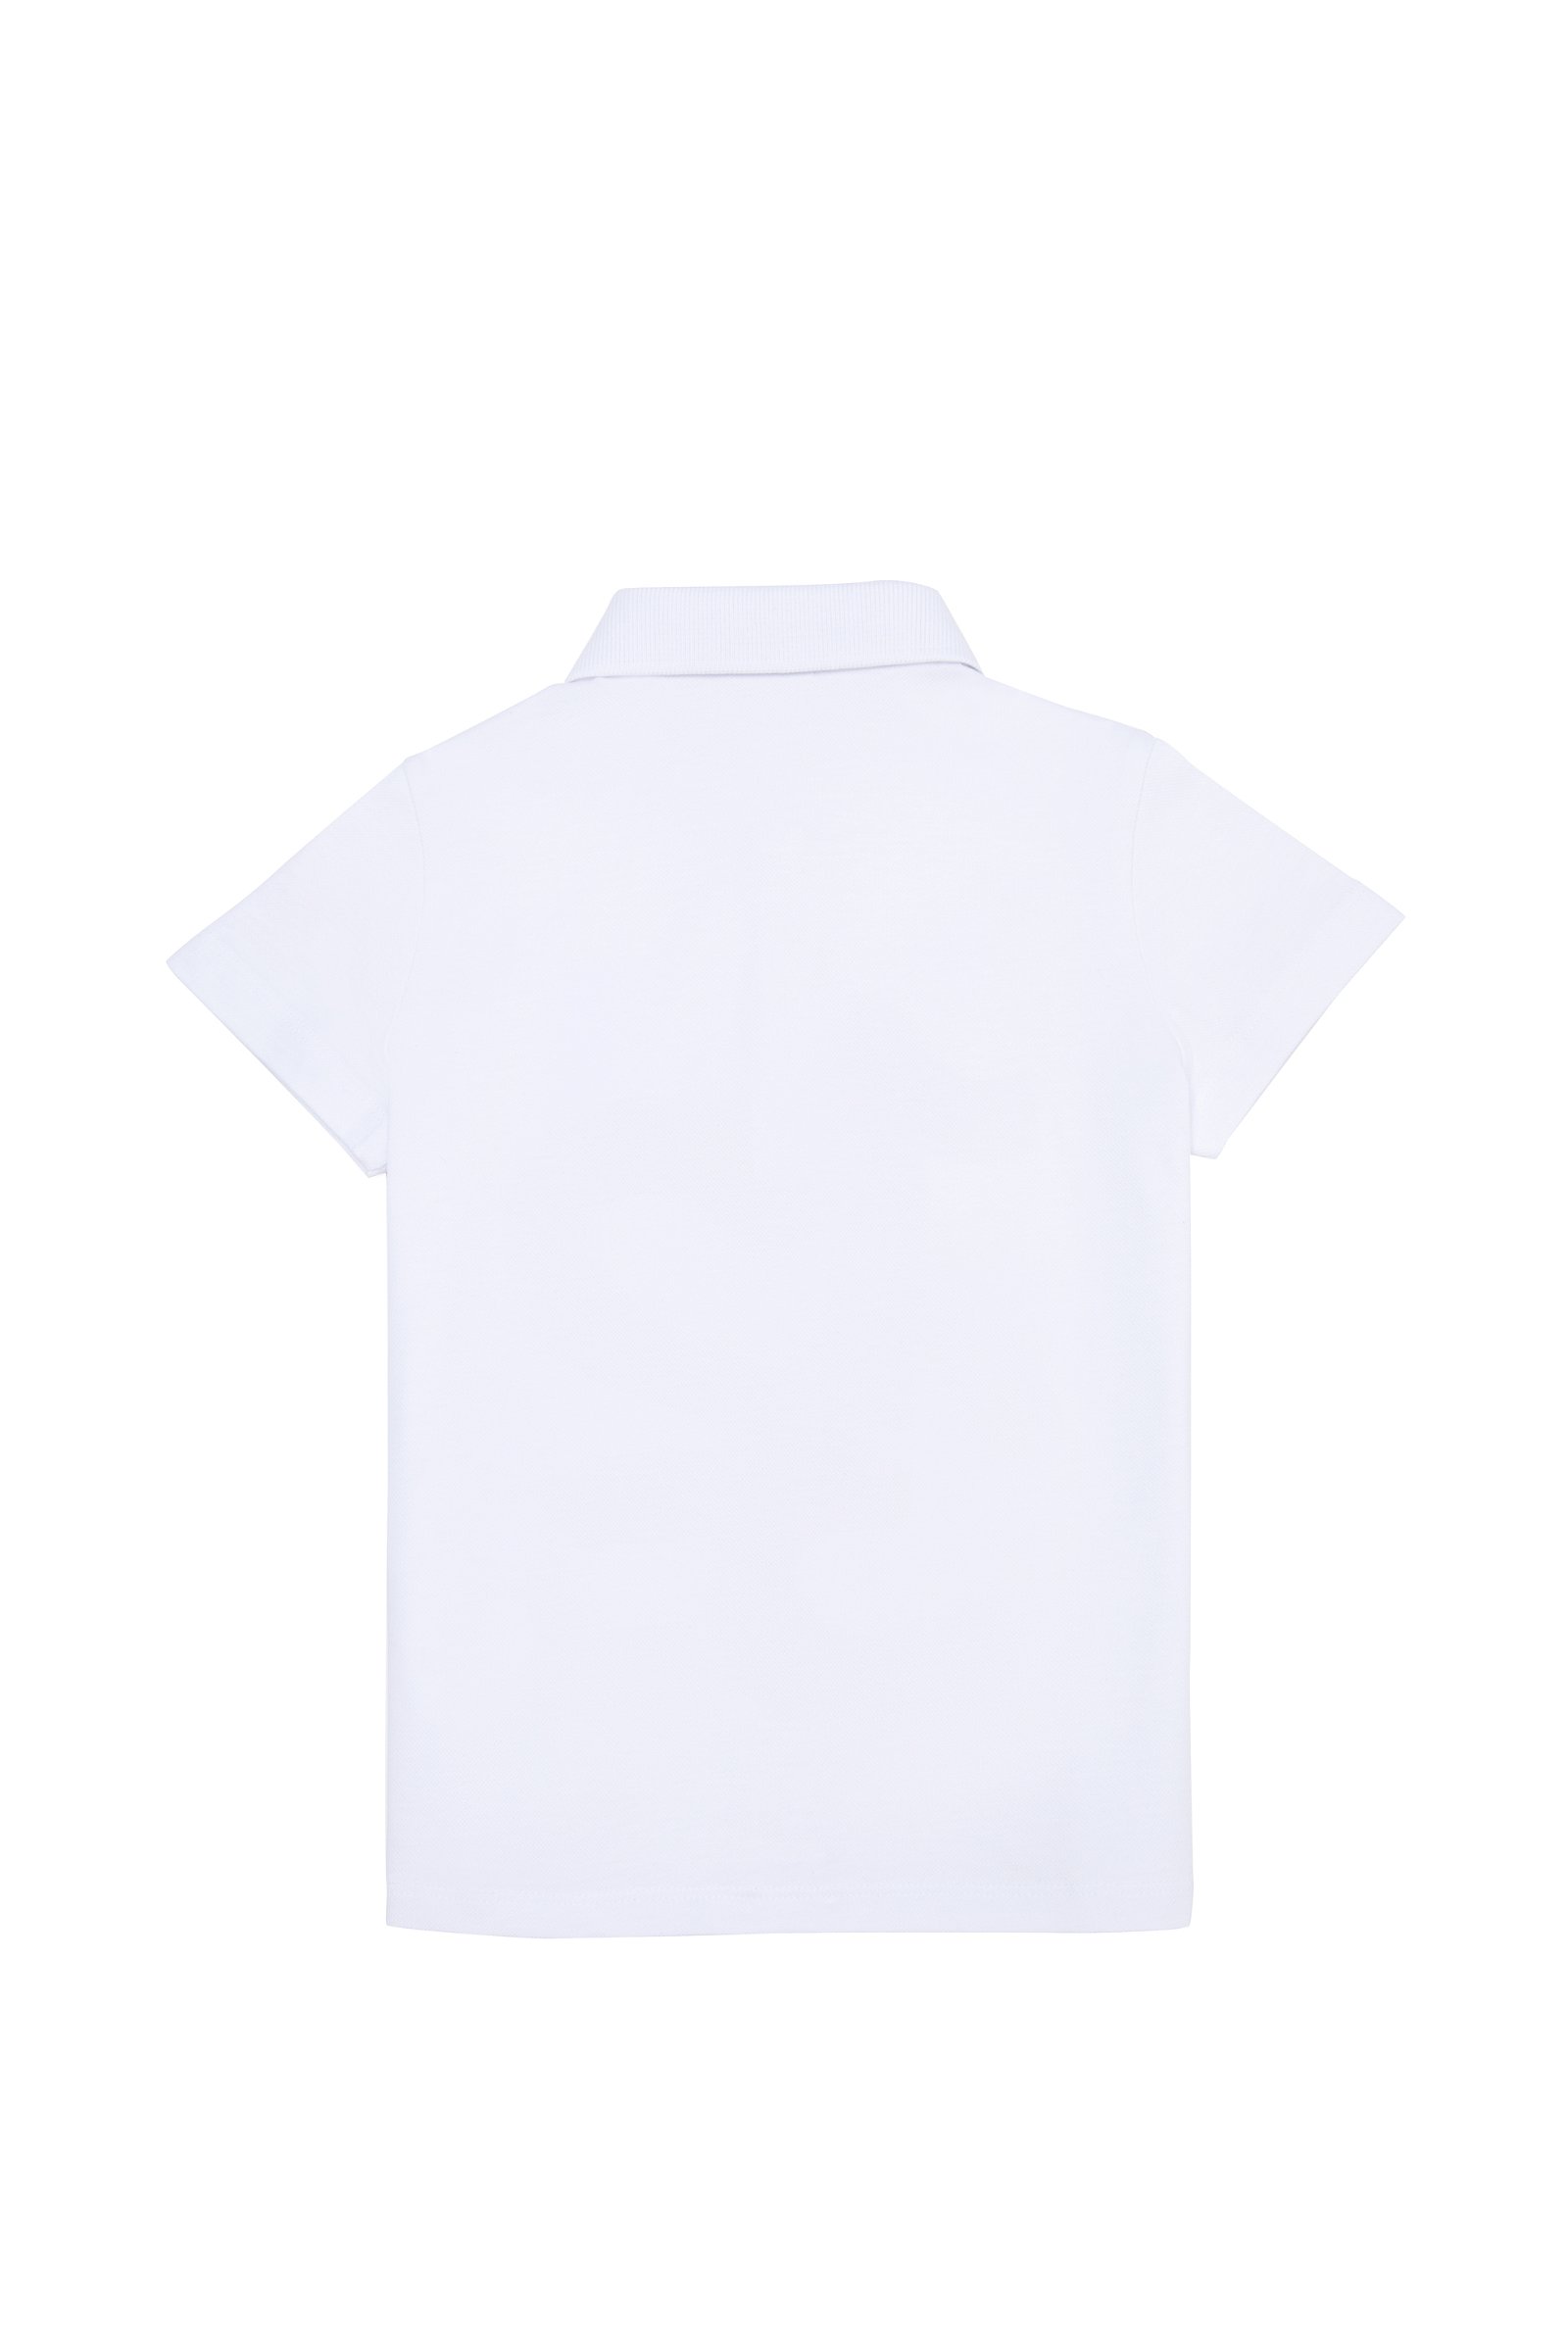 تی شرت یقه پولو سفید  استاندارد فیت  دخترانه یو اس پولو | US POLO ASSN